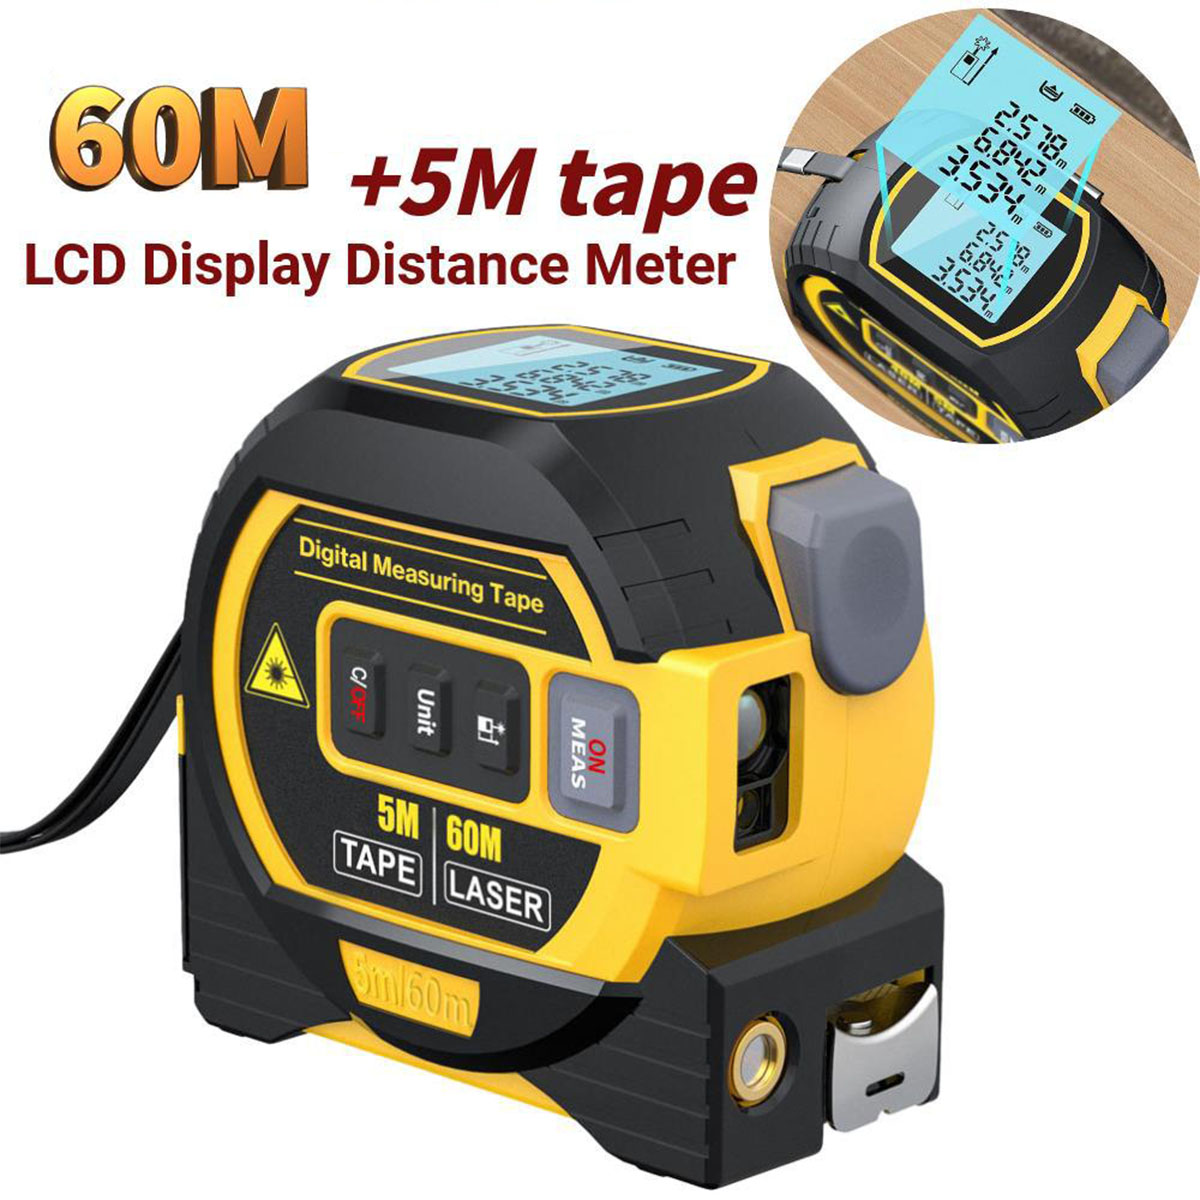 Entfernungsmesser tachymeter 3-in-1 Laser BRIGHTAKE und Gerät in Vielseitigkeit einem – Präzision